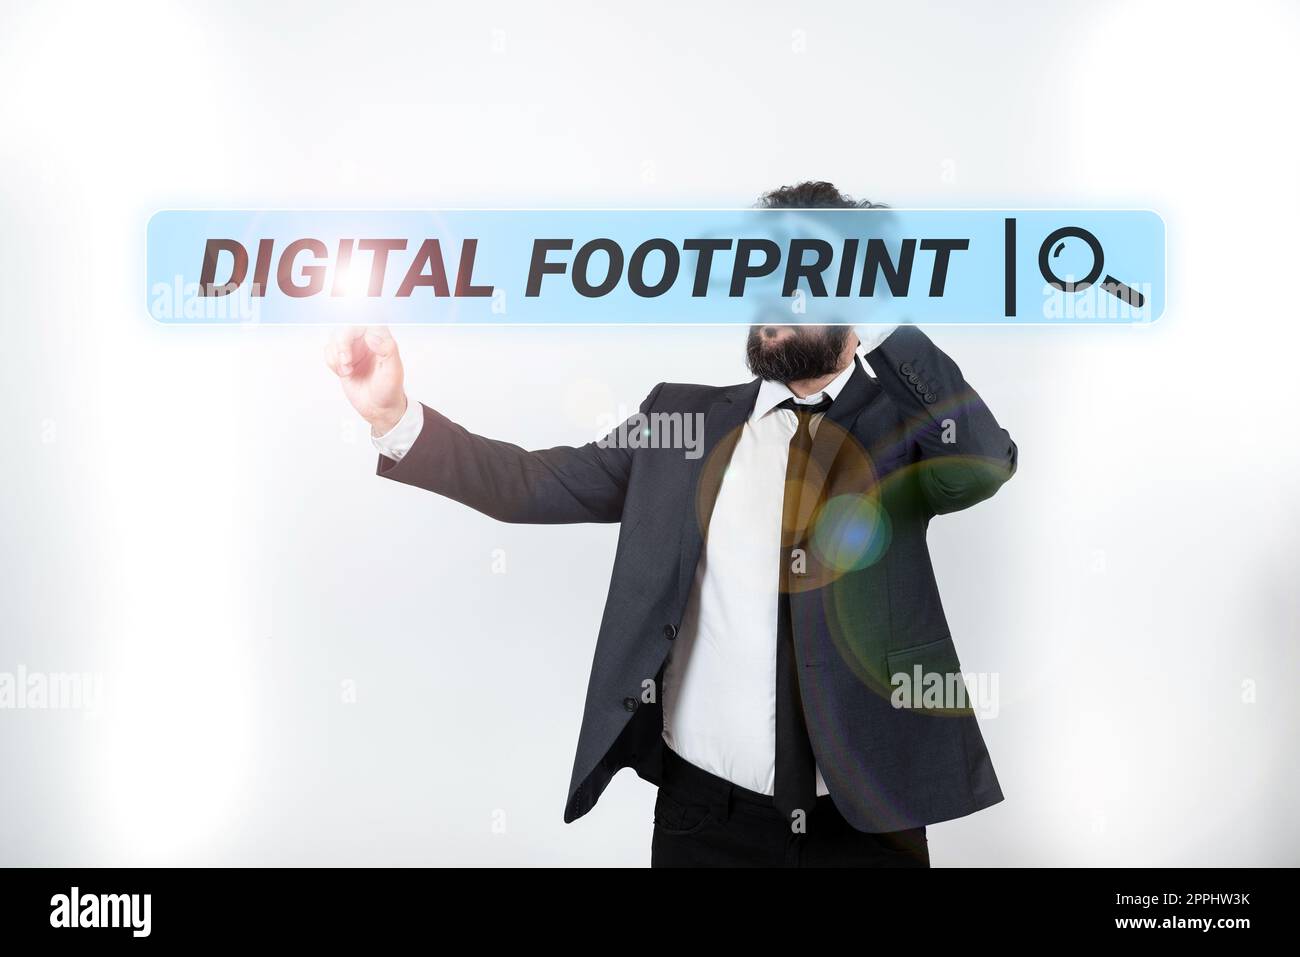 Visualizzazione del footprint digitale. L'approccio aziendale utilizza la tecnologia digitale per gestire il processo di produzione Foto Stock